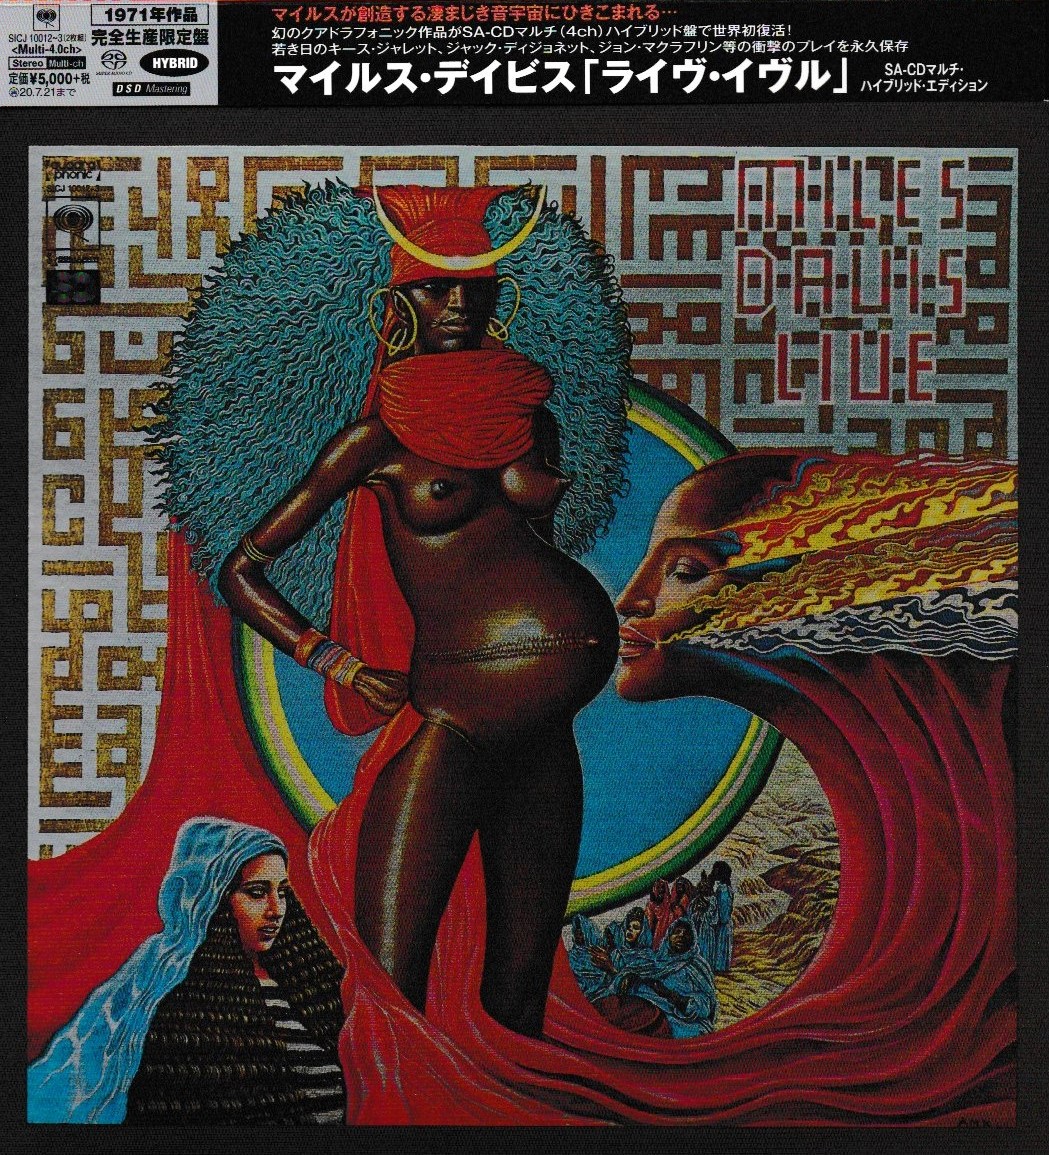 Miles Davis - 1971 - Live Evil [2020 SACD] CD1 24-88.2